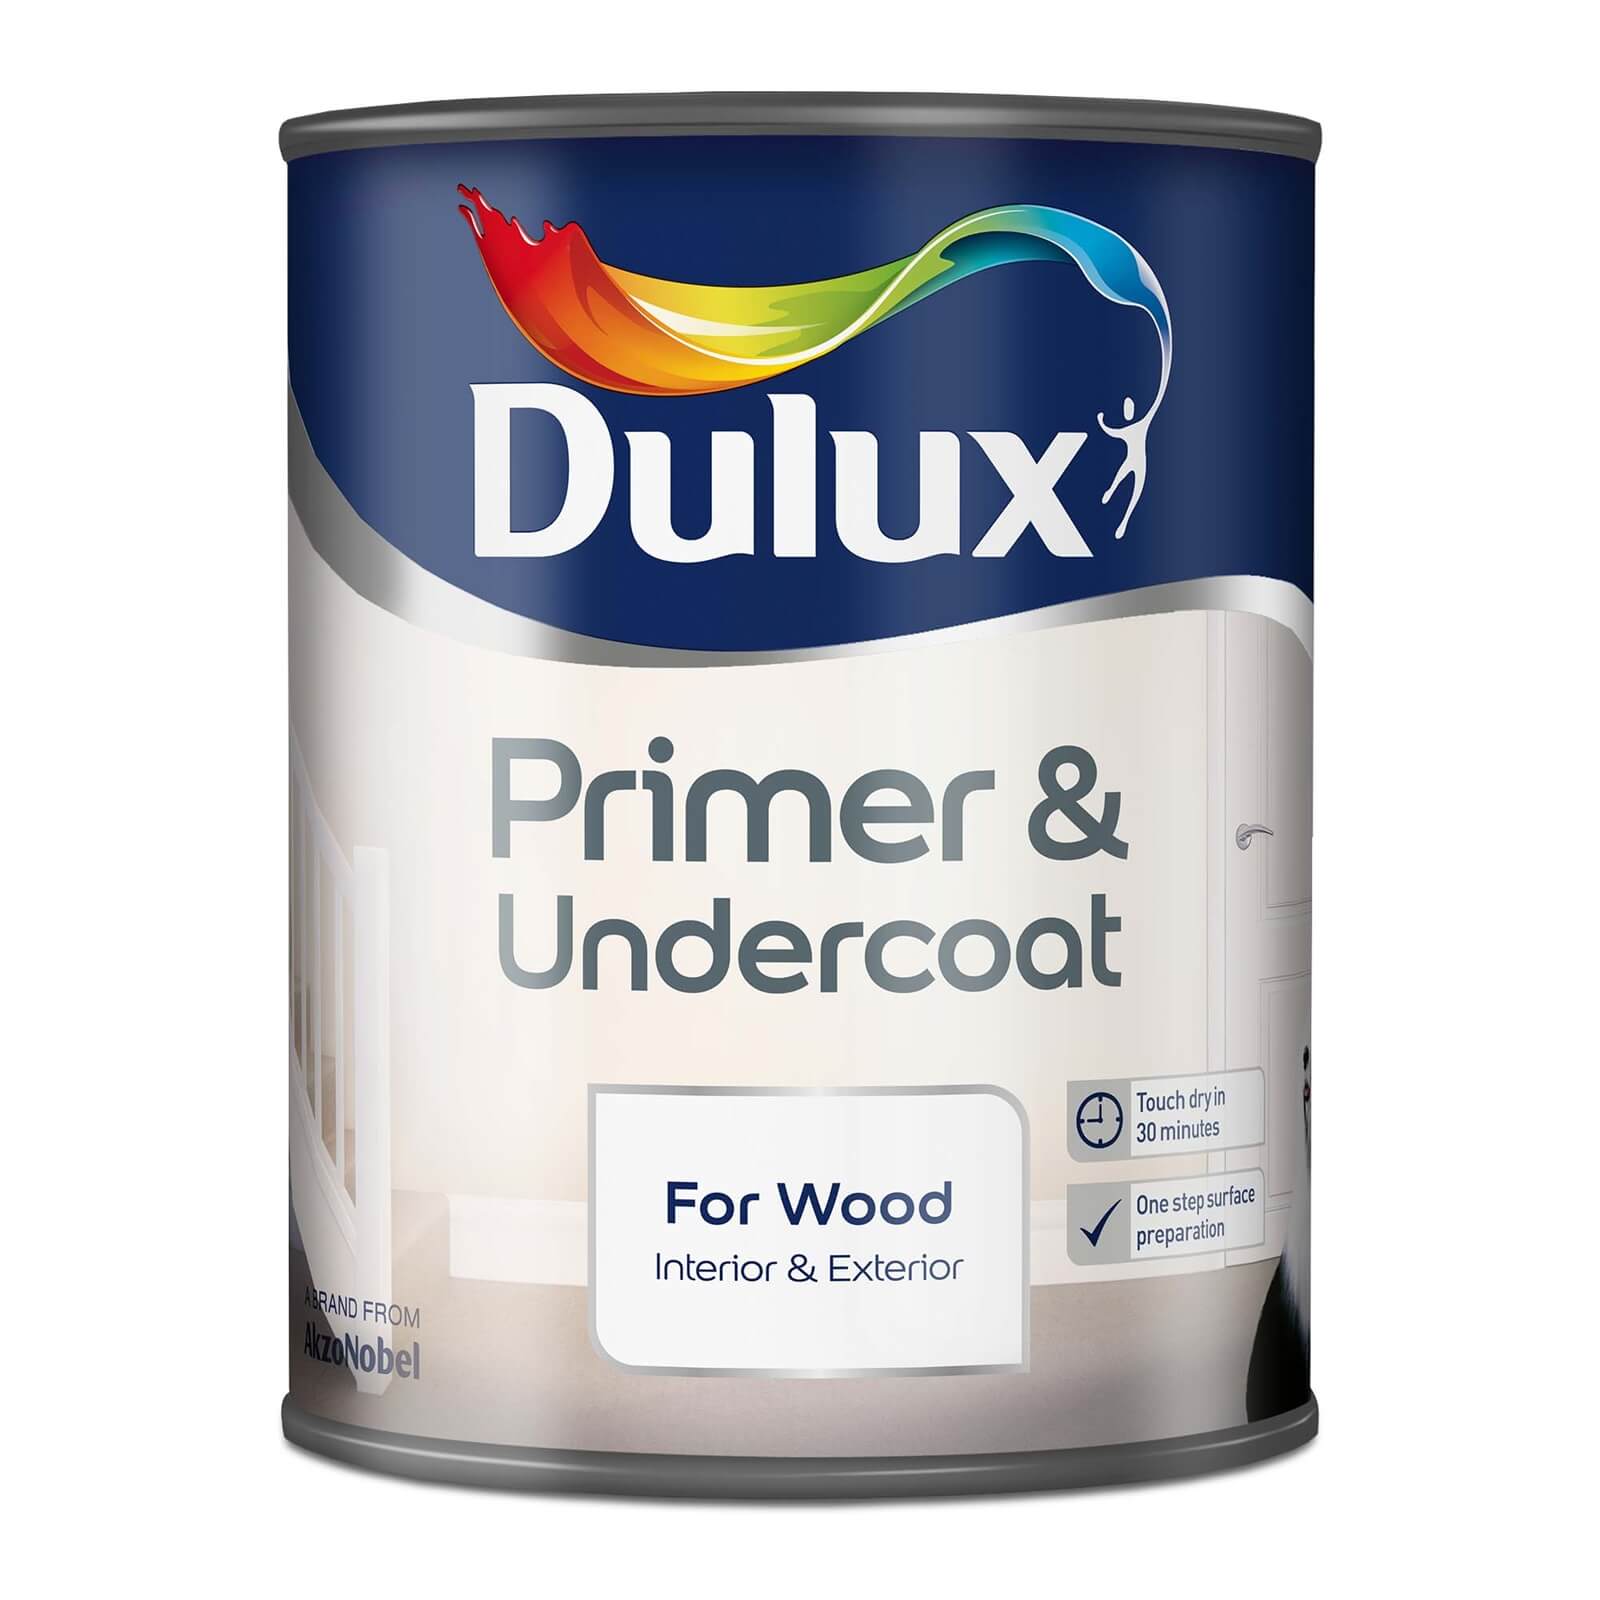 Dulux Primer & Undercoat for Interior & Exterior Wood 750ml